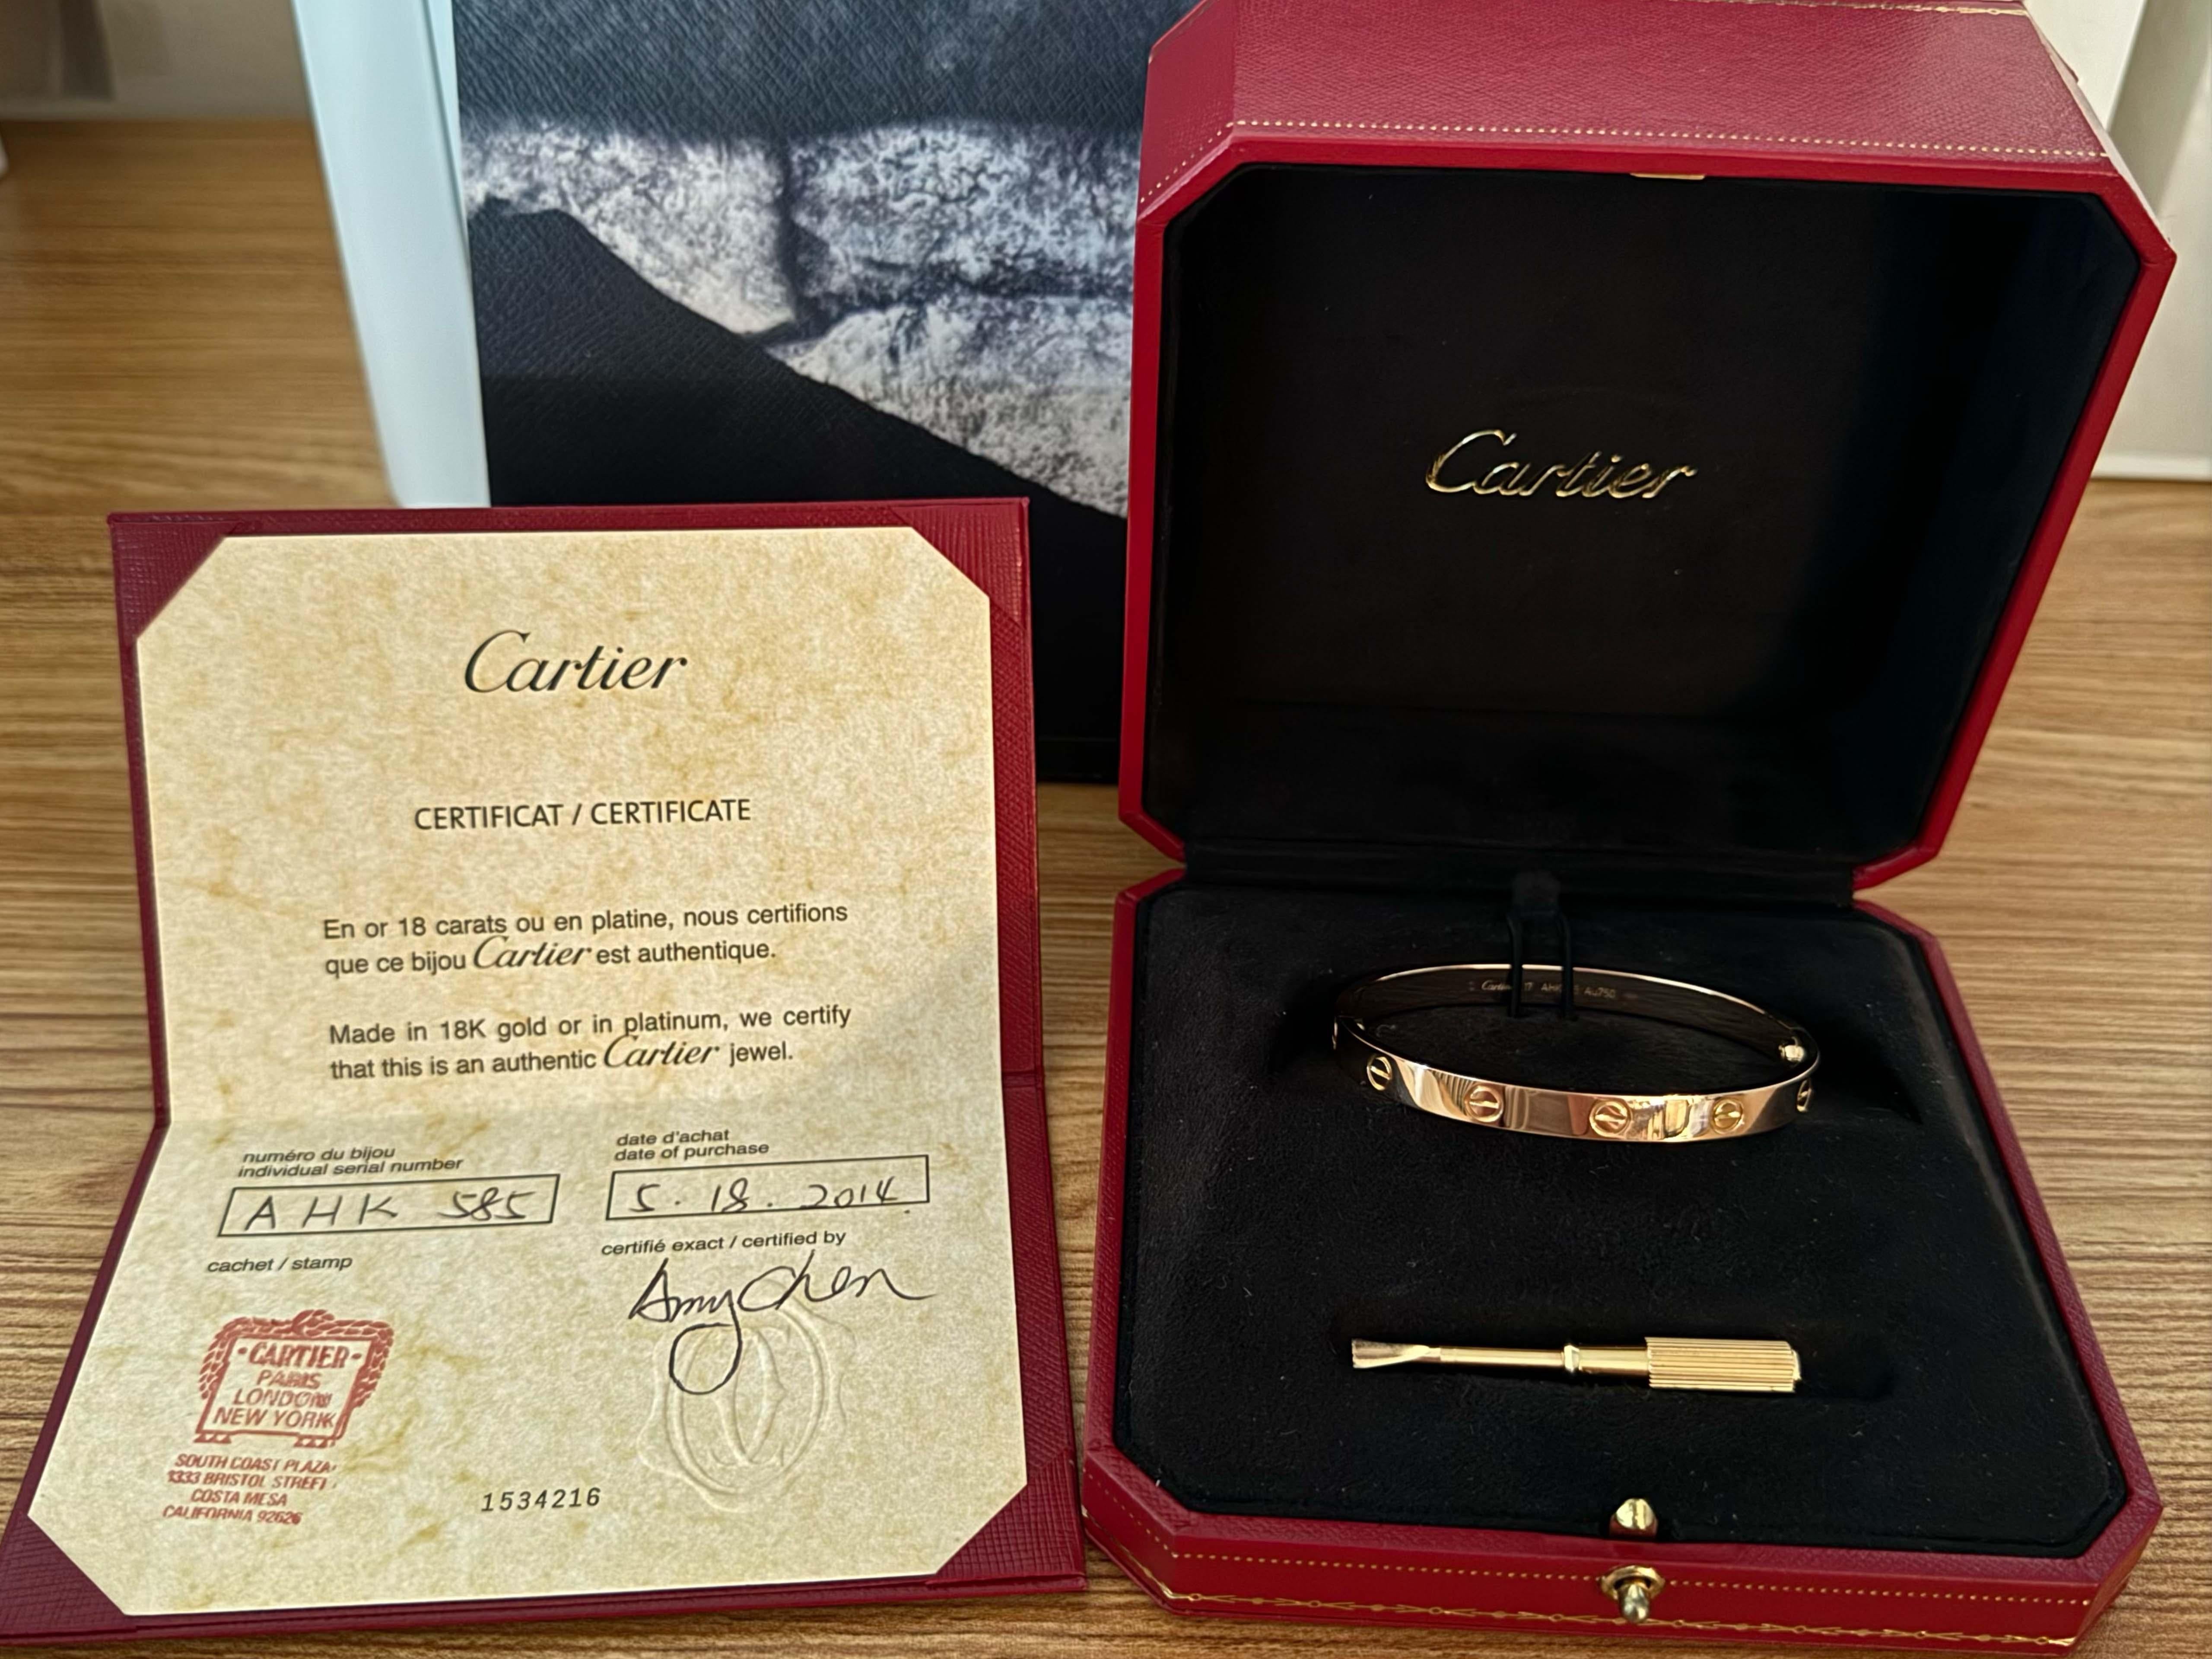 Spécifications de l'article :

Marque : Cartier

Style : Bracelet d'amour de Cartier

Métal : Or rose 18K

Taille : 17

Largeur : ~6mm

Poids : 30,5 grammes